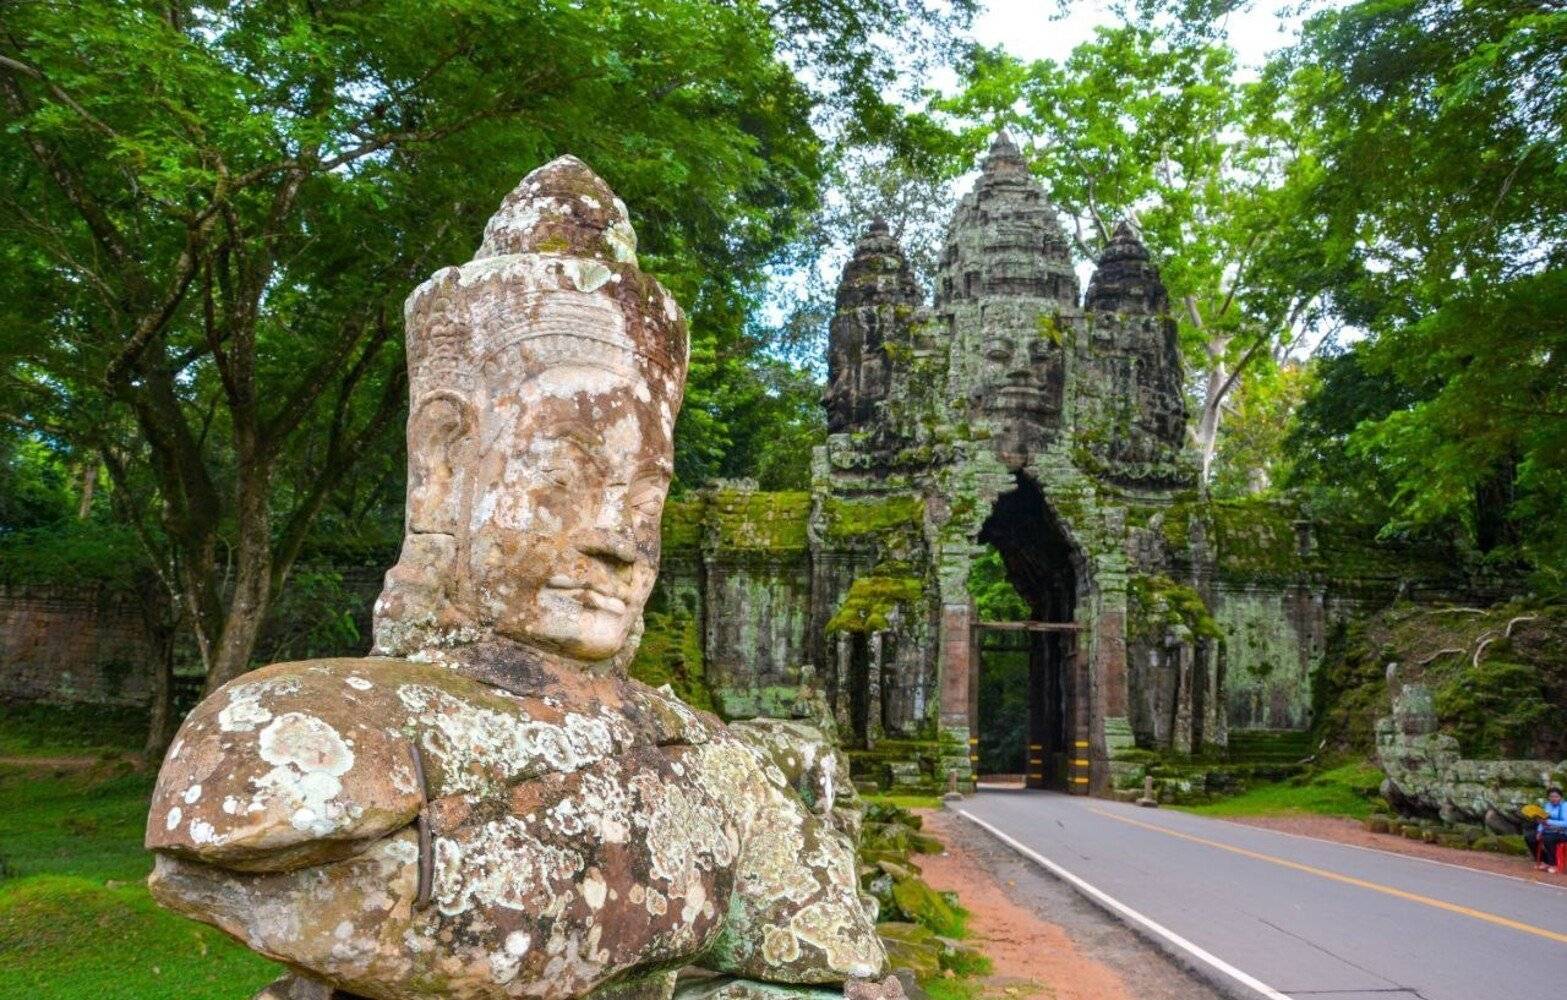 Les temples d’Angkor